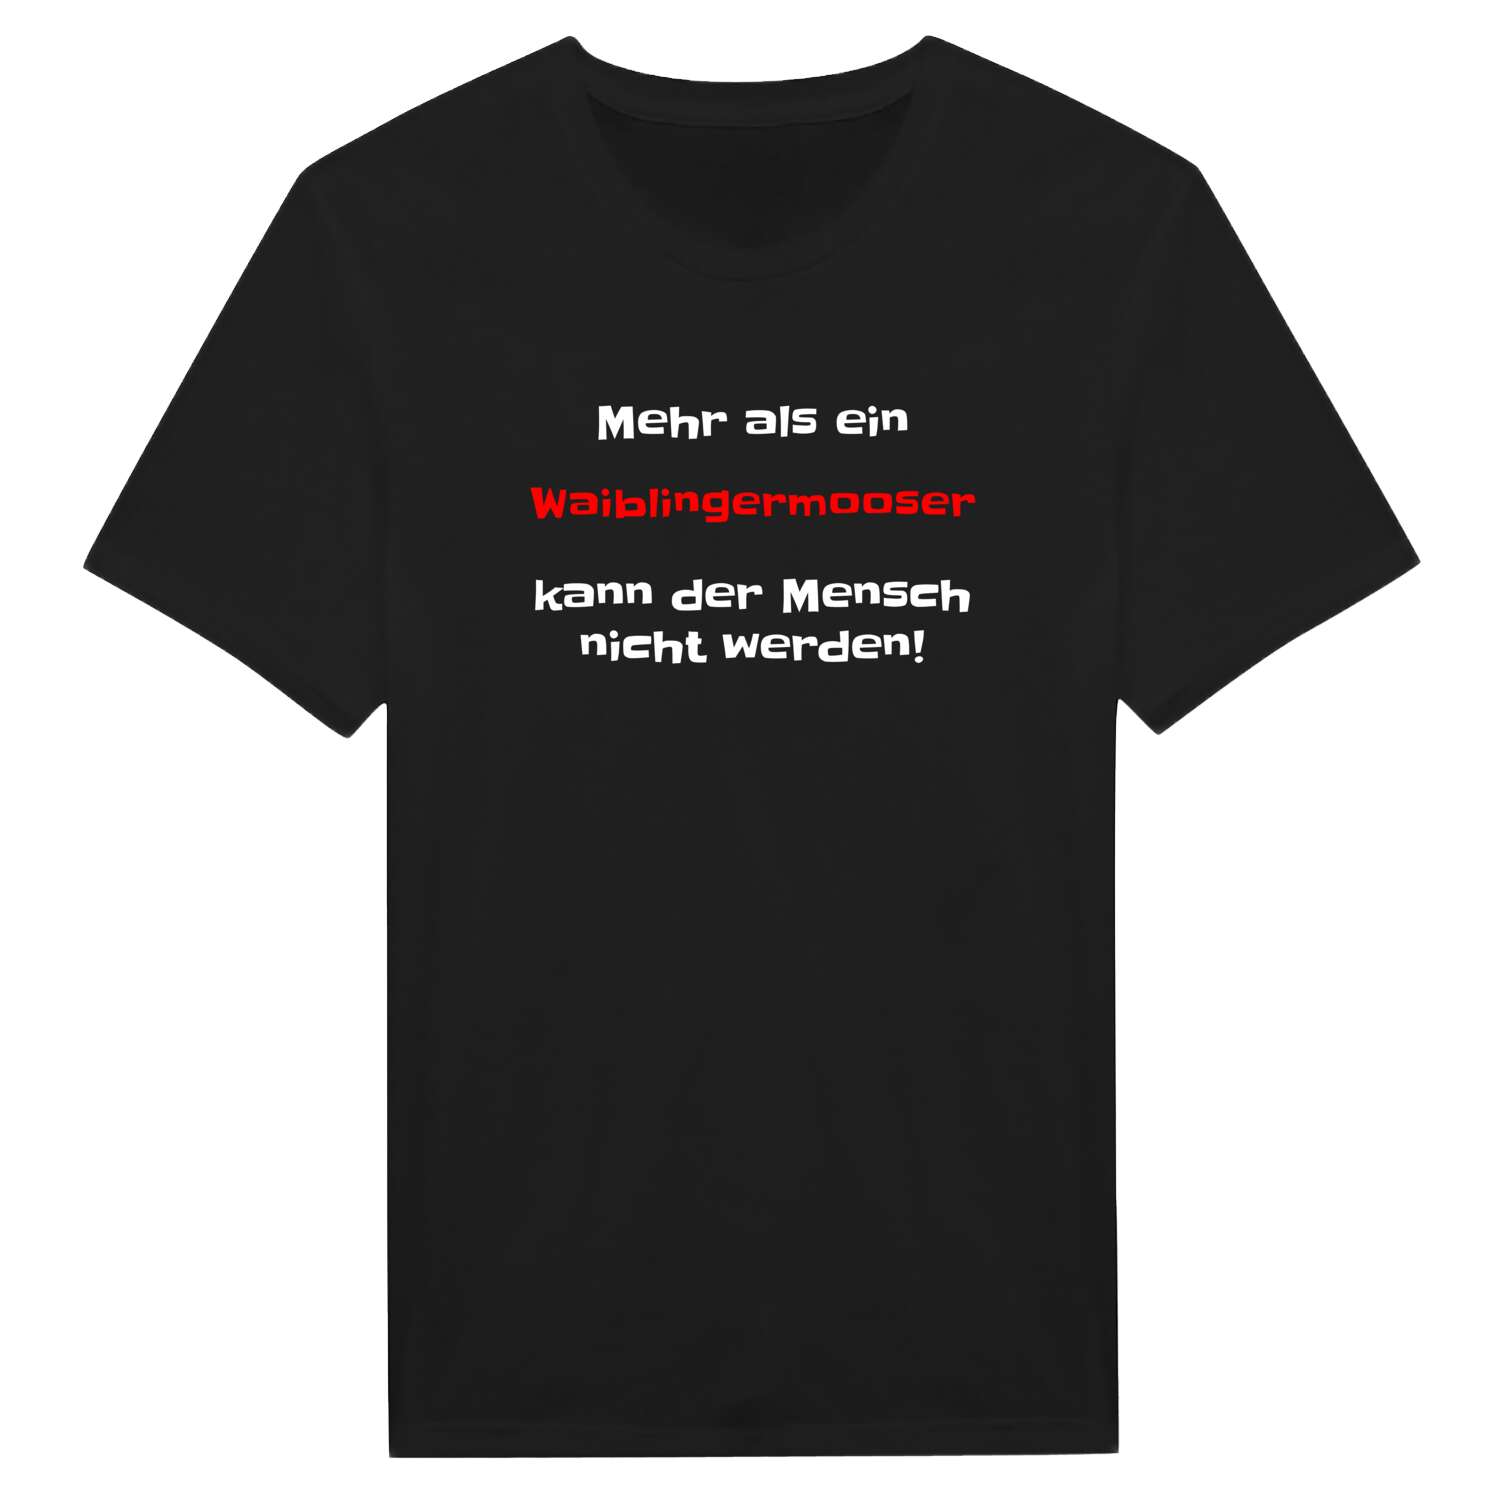 Waiblingermoos T-Shirt »Mehr als ein«